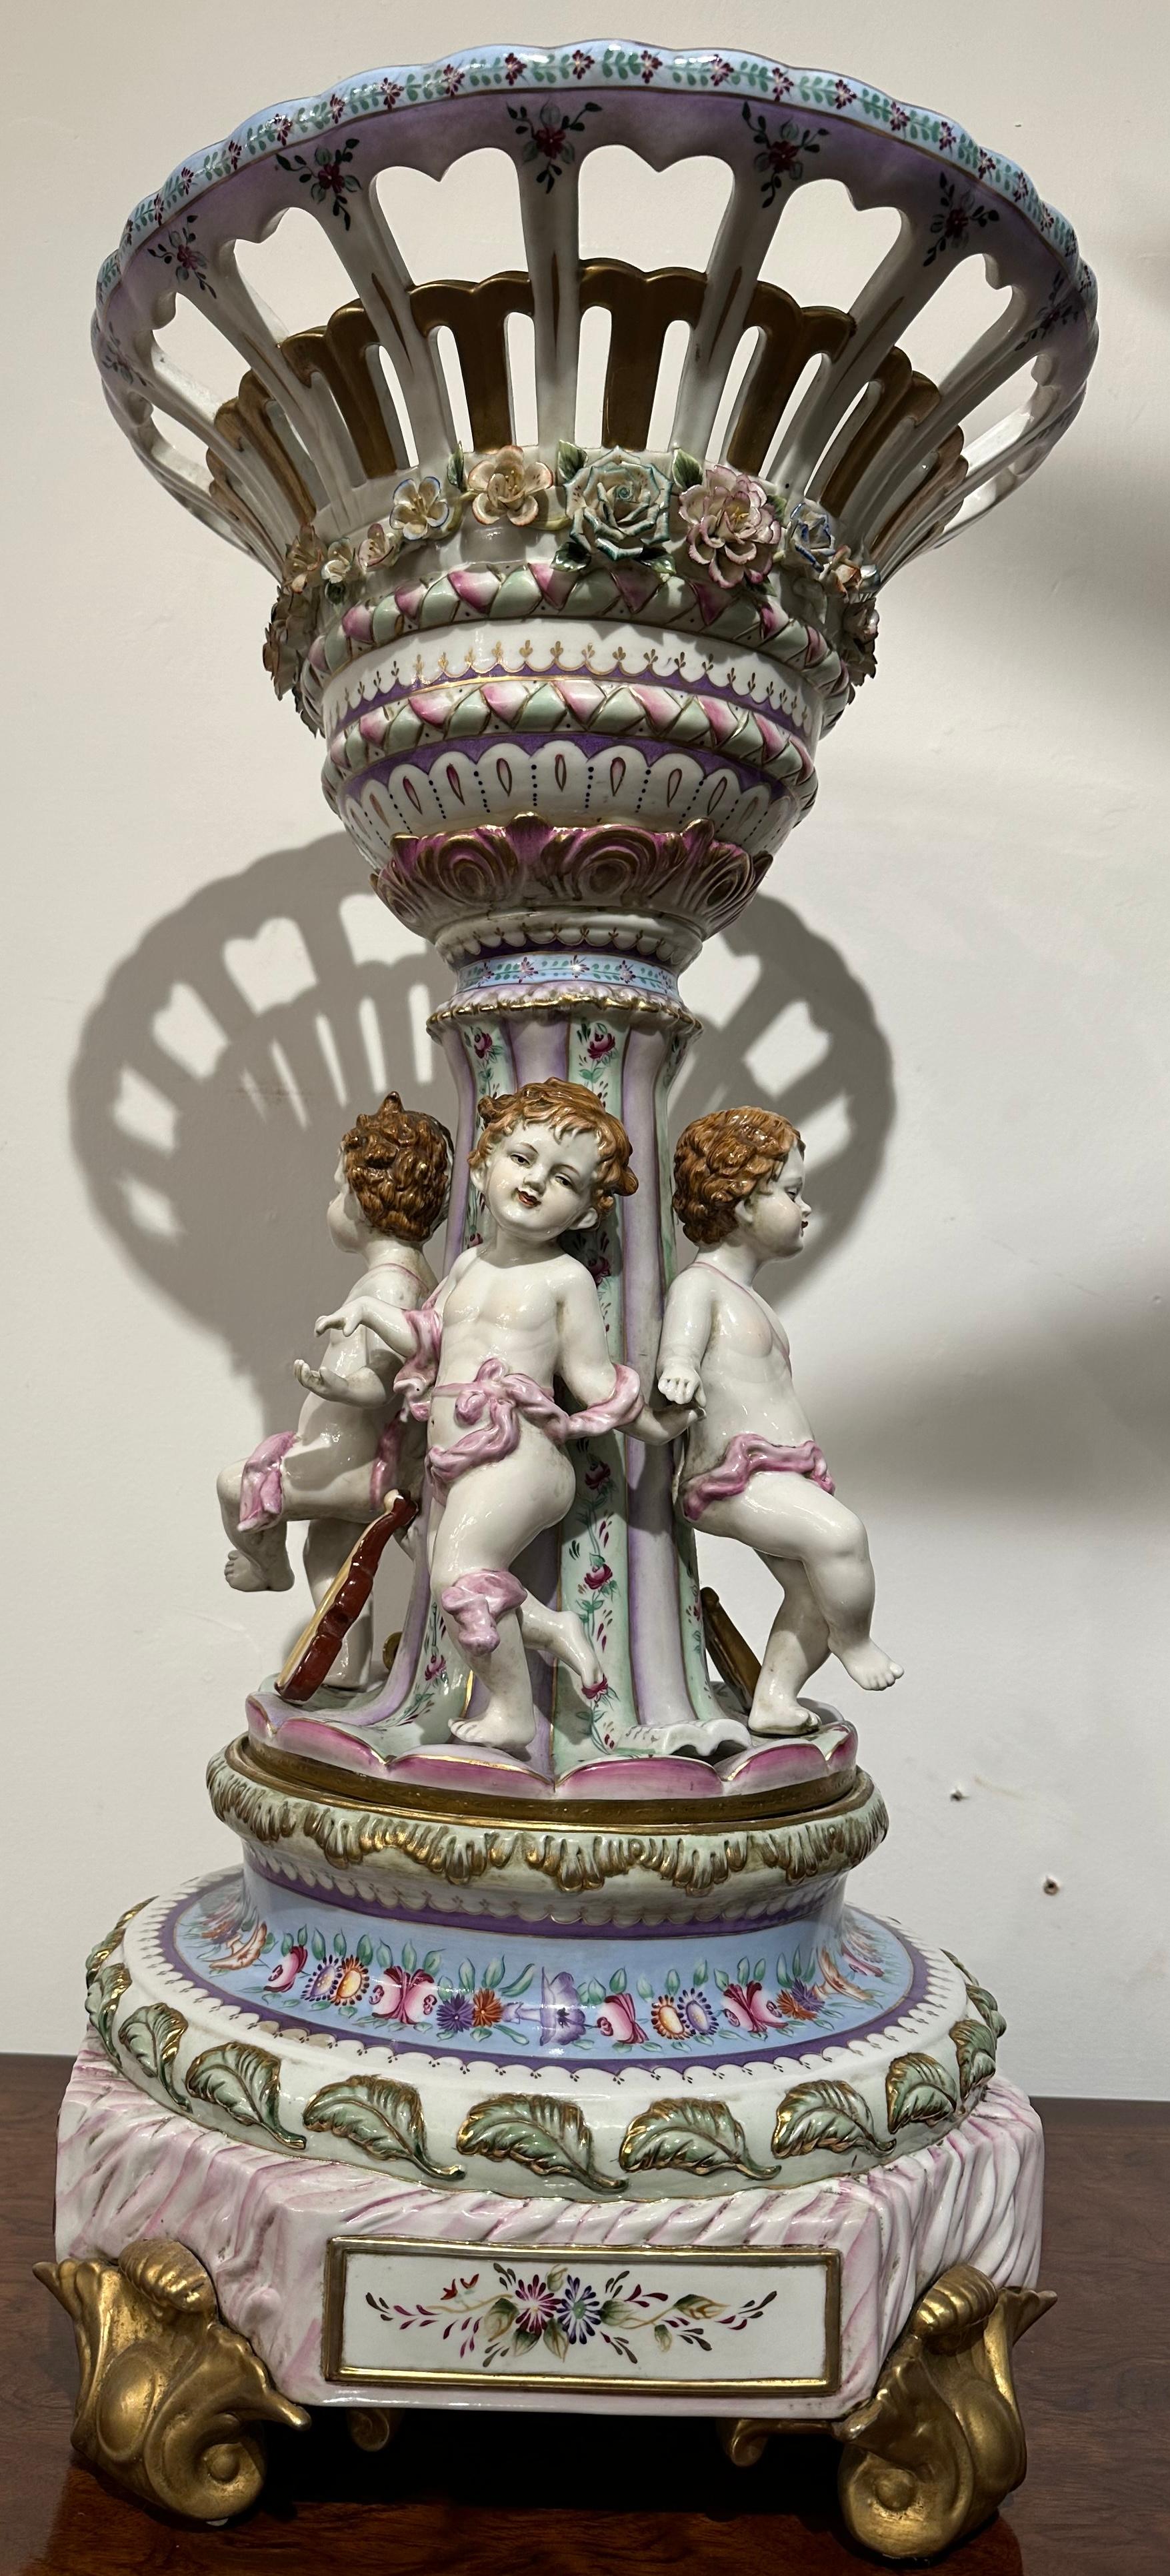 Ein äußerst dekorativer und sorgfältig gearbeiteter Tafelaufsatz aus Porzellan im Sèvres-Stil. Ein zarter, durchbrochener Korb, umkränzt von Rosen, sitzt auf einer Säule, die von Amoretten umgeben ist, auf einem kunstvoll bemalten, gestuften Sockel.